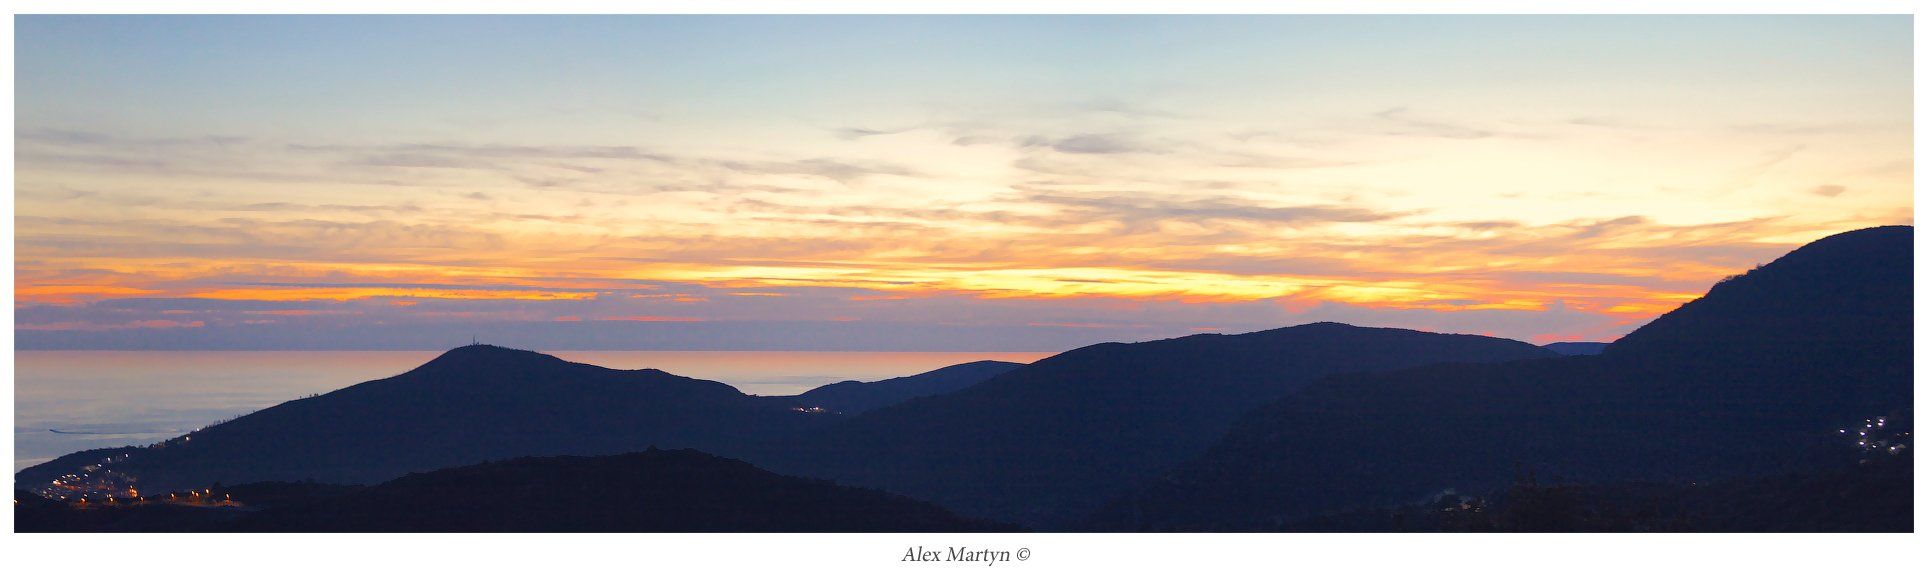 черногория, будва, небо, Alexander Martynov